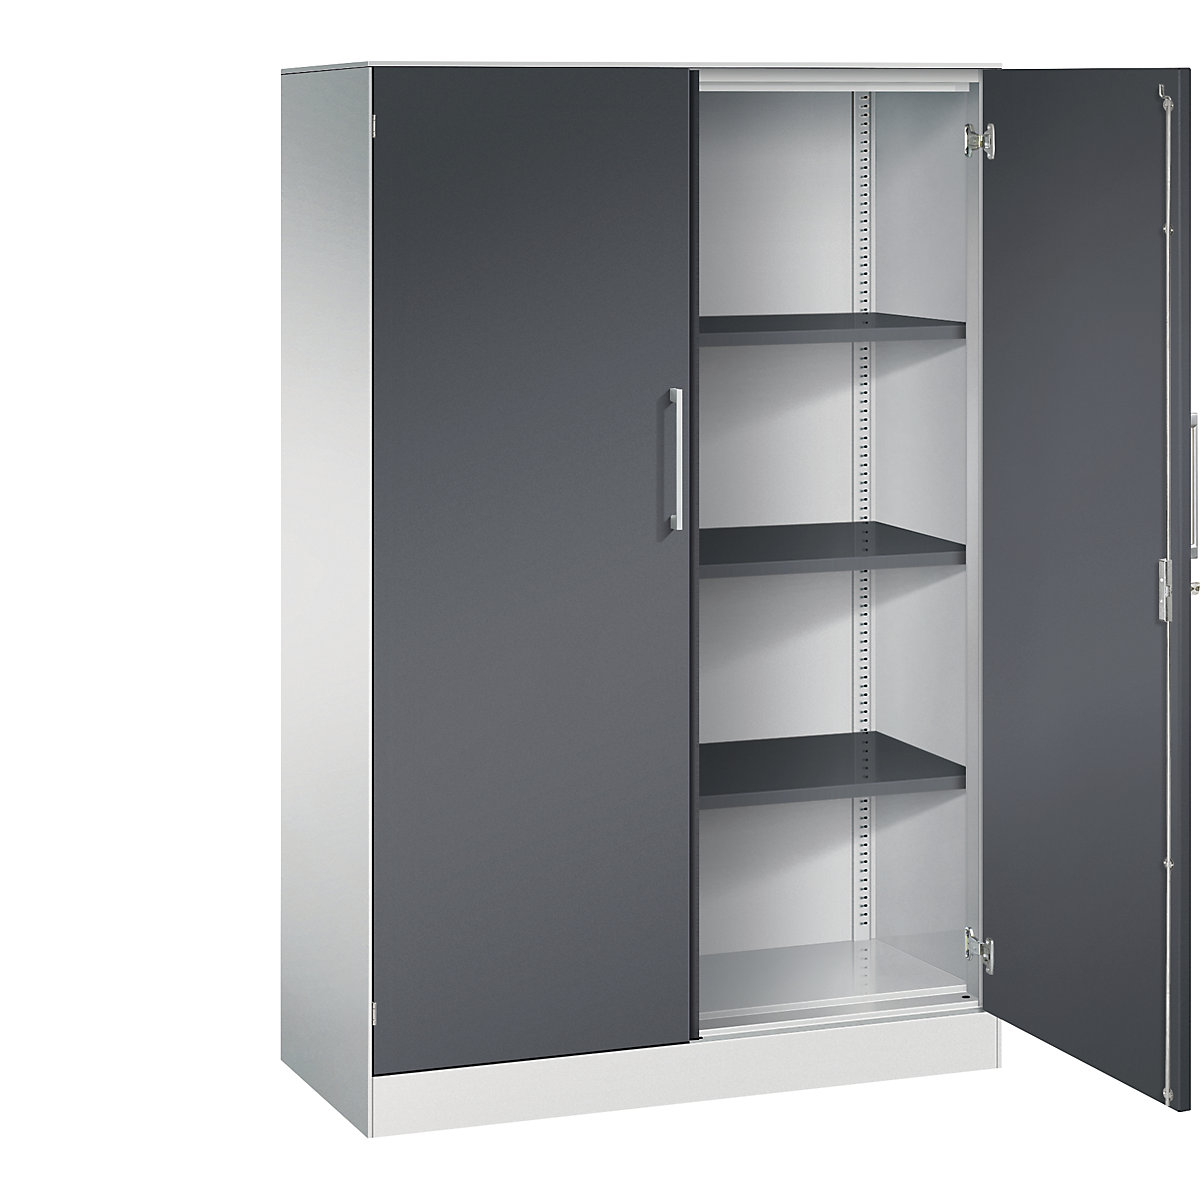 ASISTO double door cupboard, height 1617 mm – C+P, width 1000 mm, 3 shelves, light grey/black grey-5